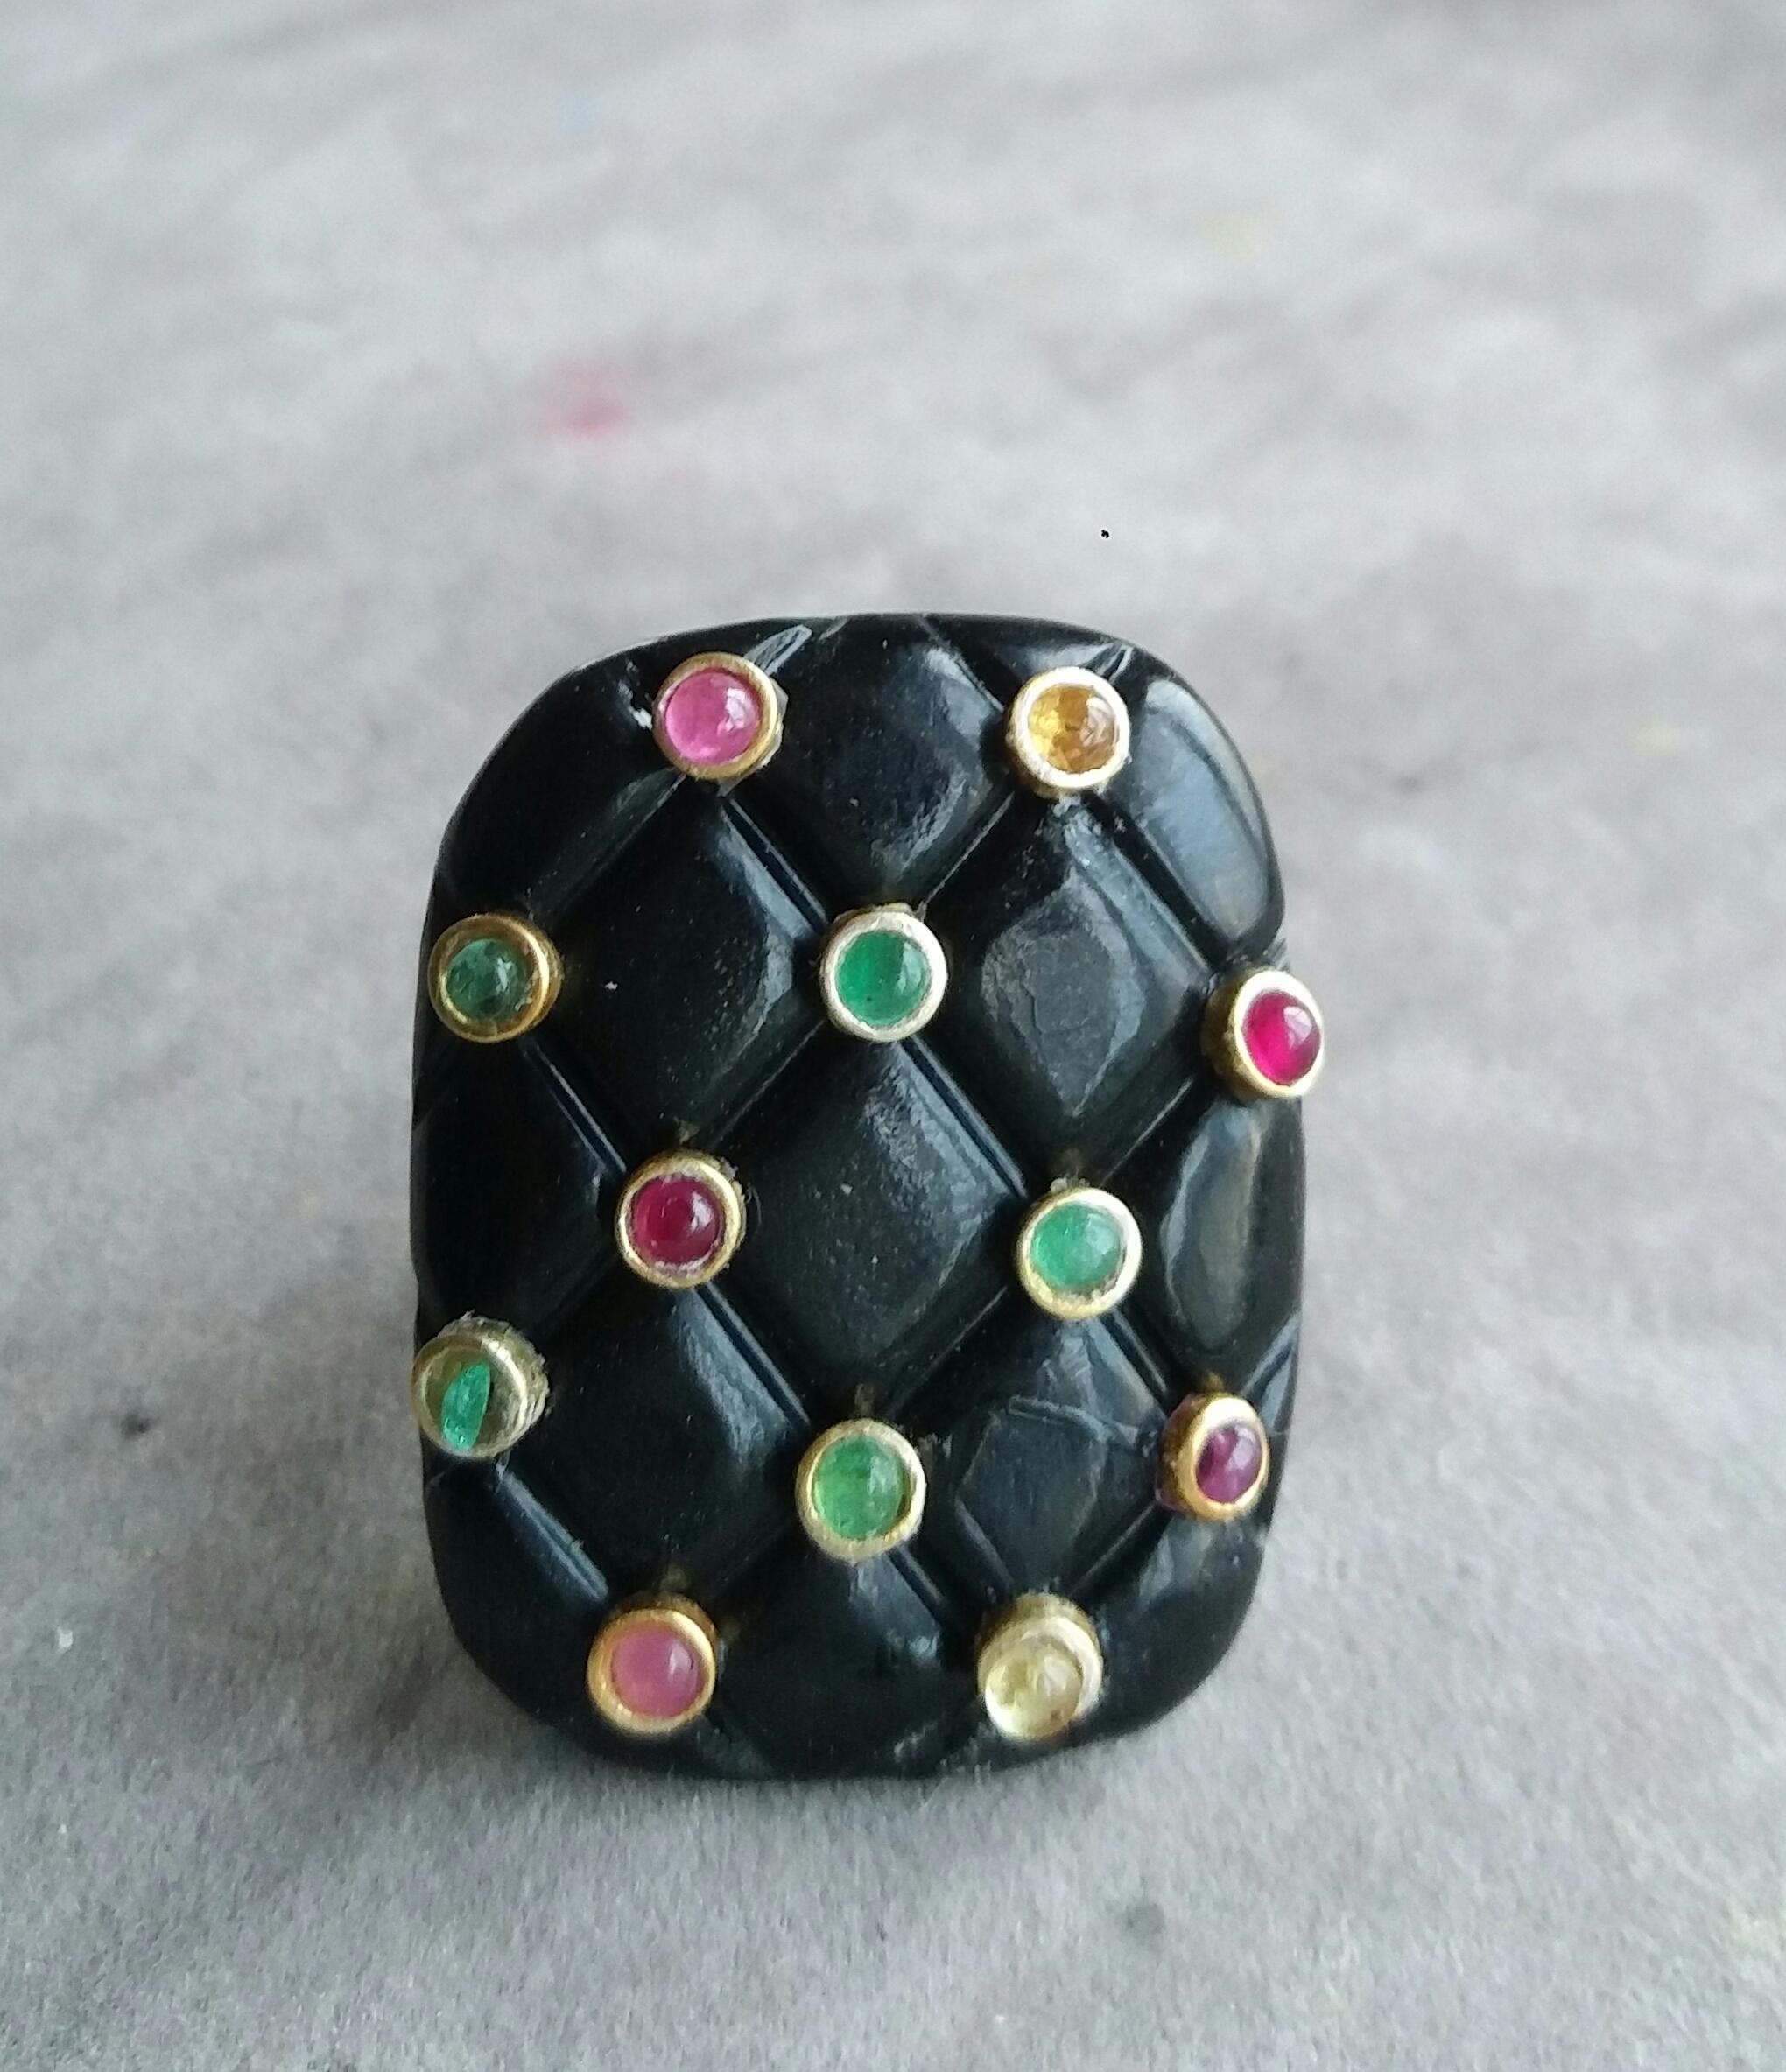 Extrem stilvoller und einzigartiger Ring, bestehend aus einem natürlichen schwarzen Onyx in Kissenform mit den Maßen 27 x 34 mm und einem Gewicht von 80 Karat, verziert mit 12 kleinen runden Rubinen, Smaragden und gelben Saphiren, eingefasst in